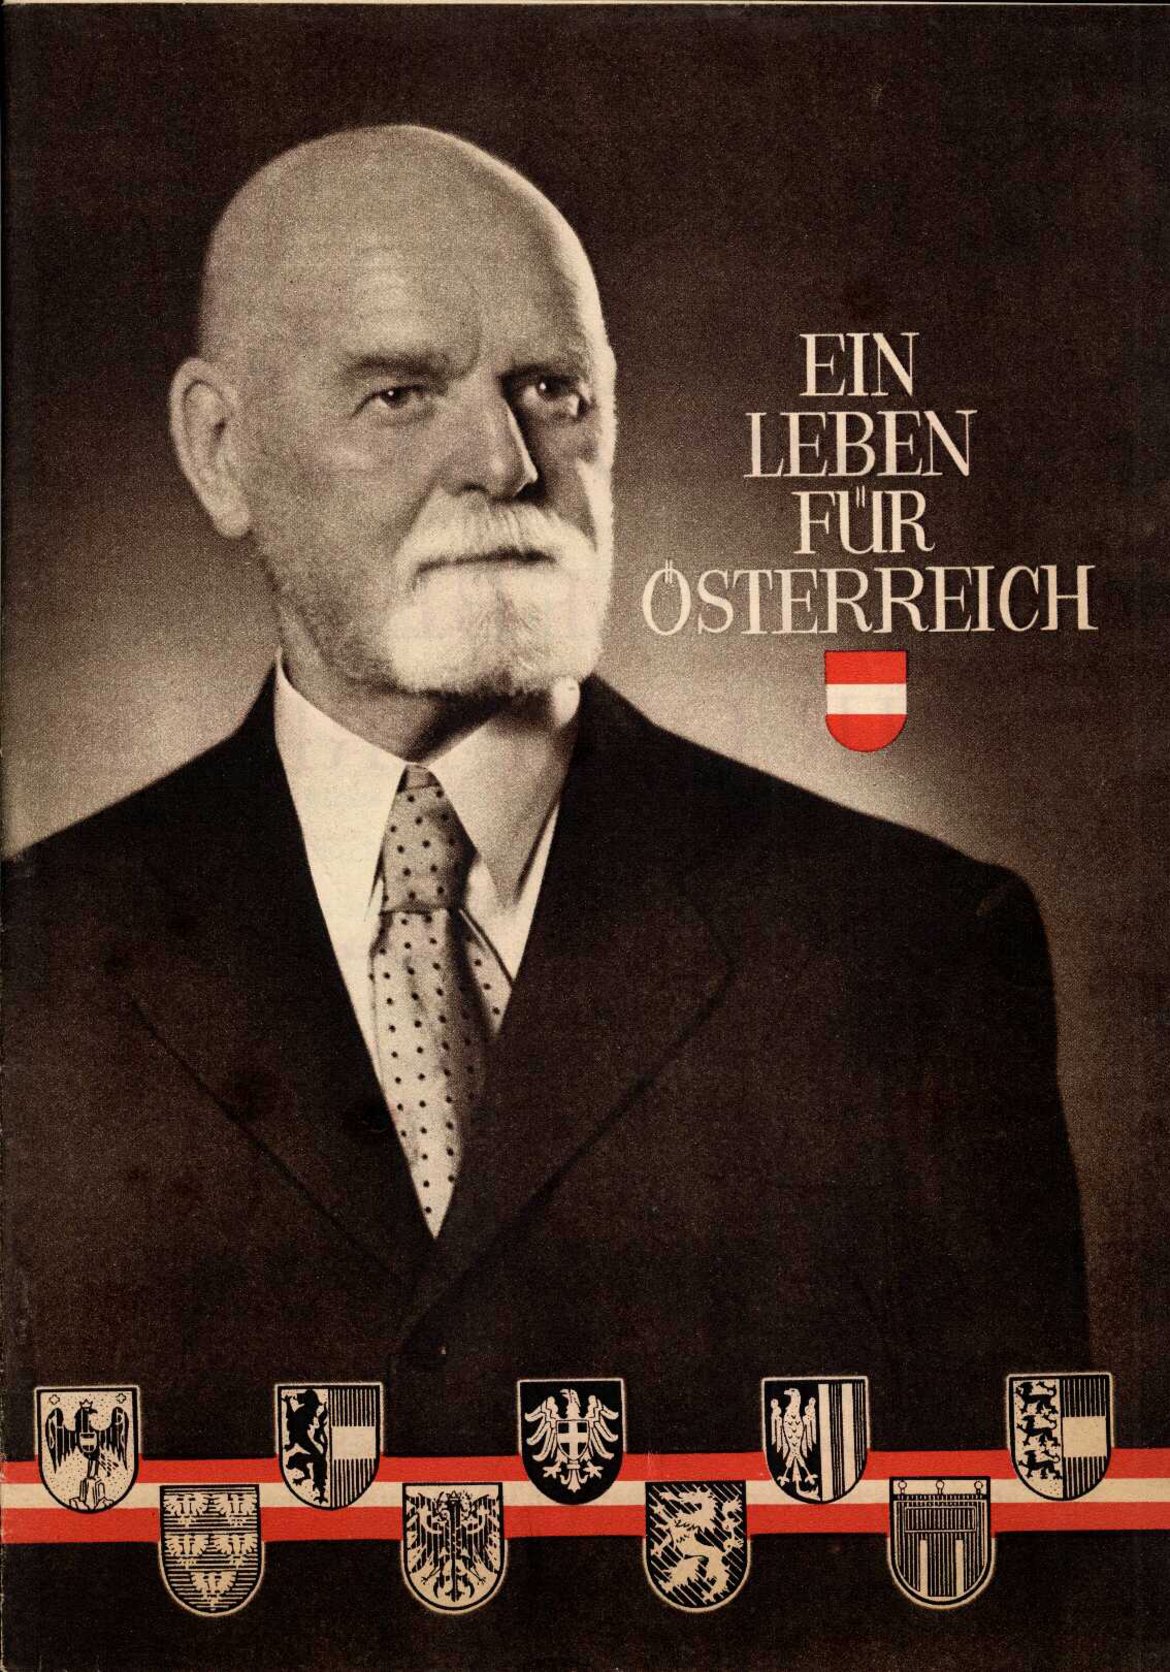 Portrait von Theodor Körner mit der danebenstehenden Textzeile: Ein Leben für Österreich.